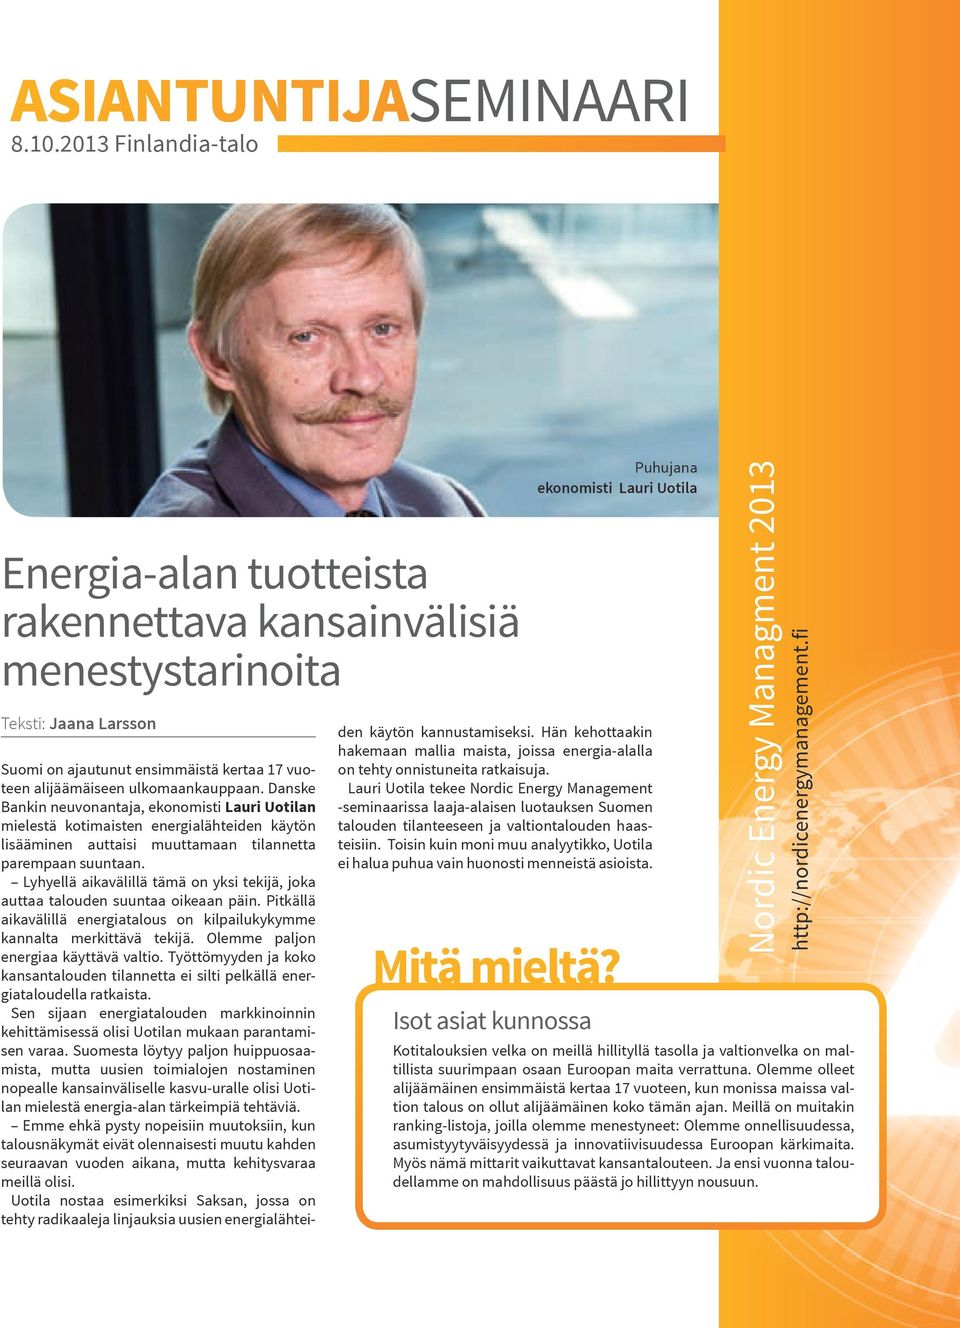 Danske Bankin neuvonantaja, ekonomisti Lauri Uotilan mielestä kotimaisten energialähteiden käytön lisääminen auttaisi muuttamaan tilannetta parempaan suuntaan.